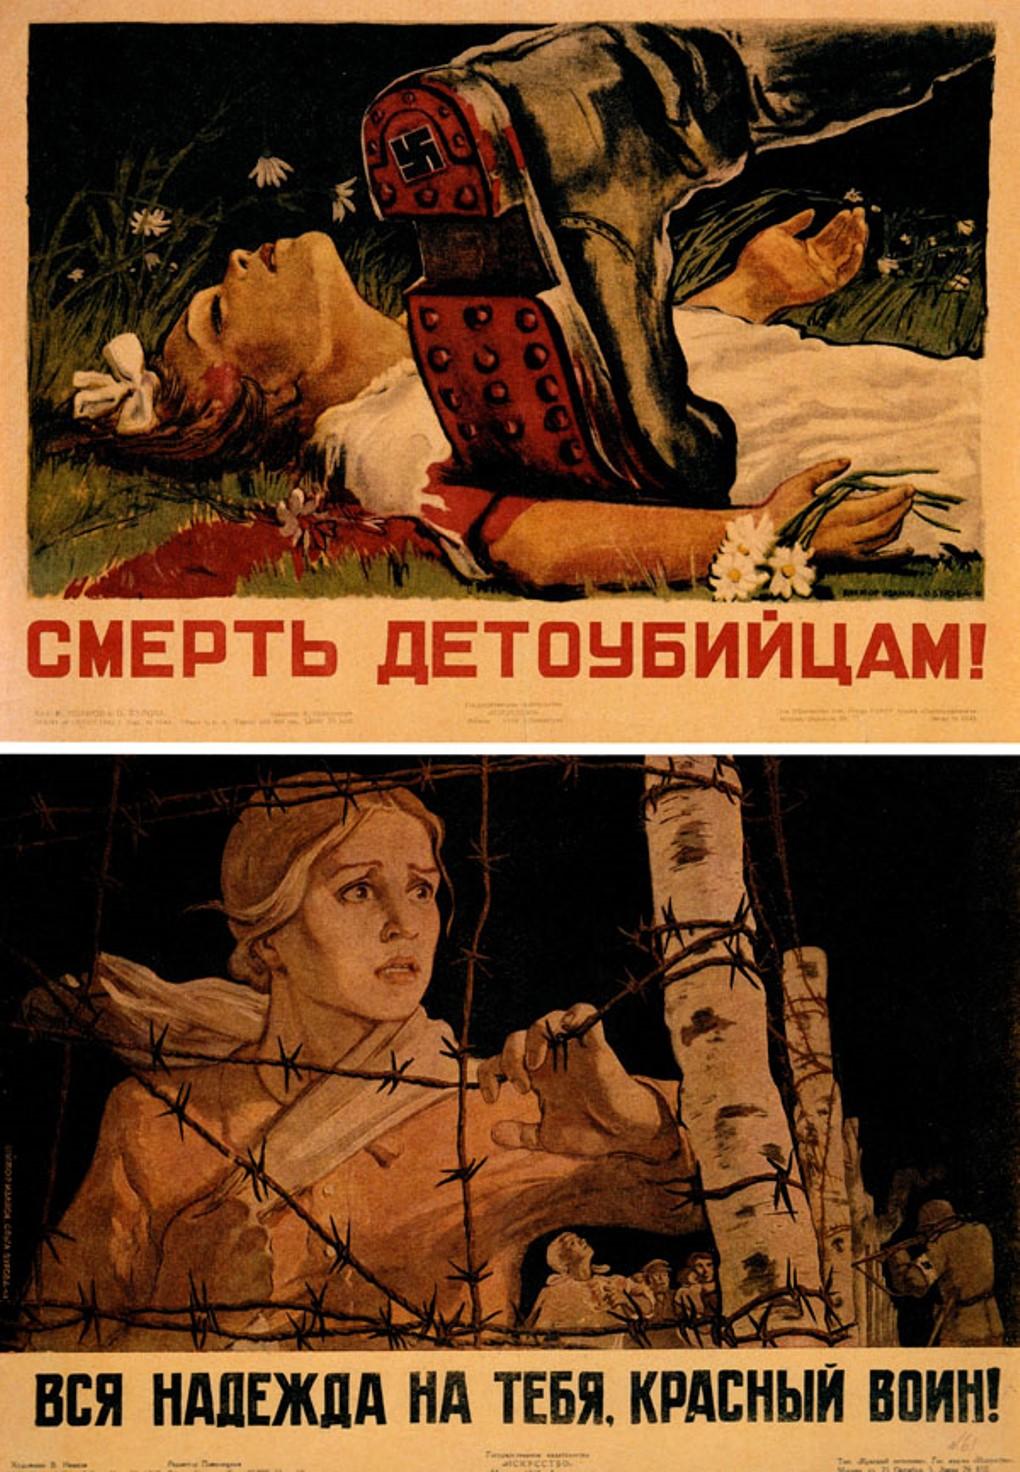 Вся надежда на тебя, Красный воин! Виктор Иванов и Ольга Бурова, 1943